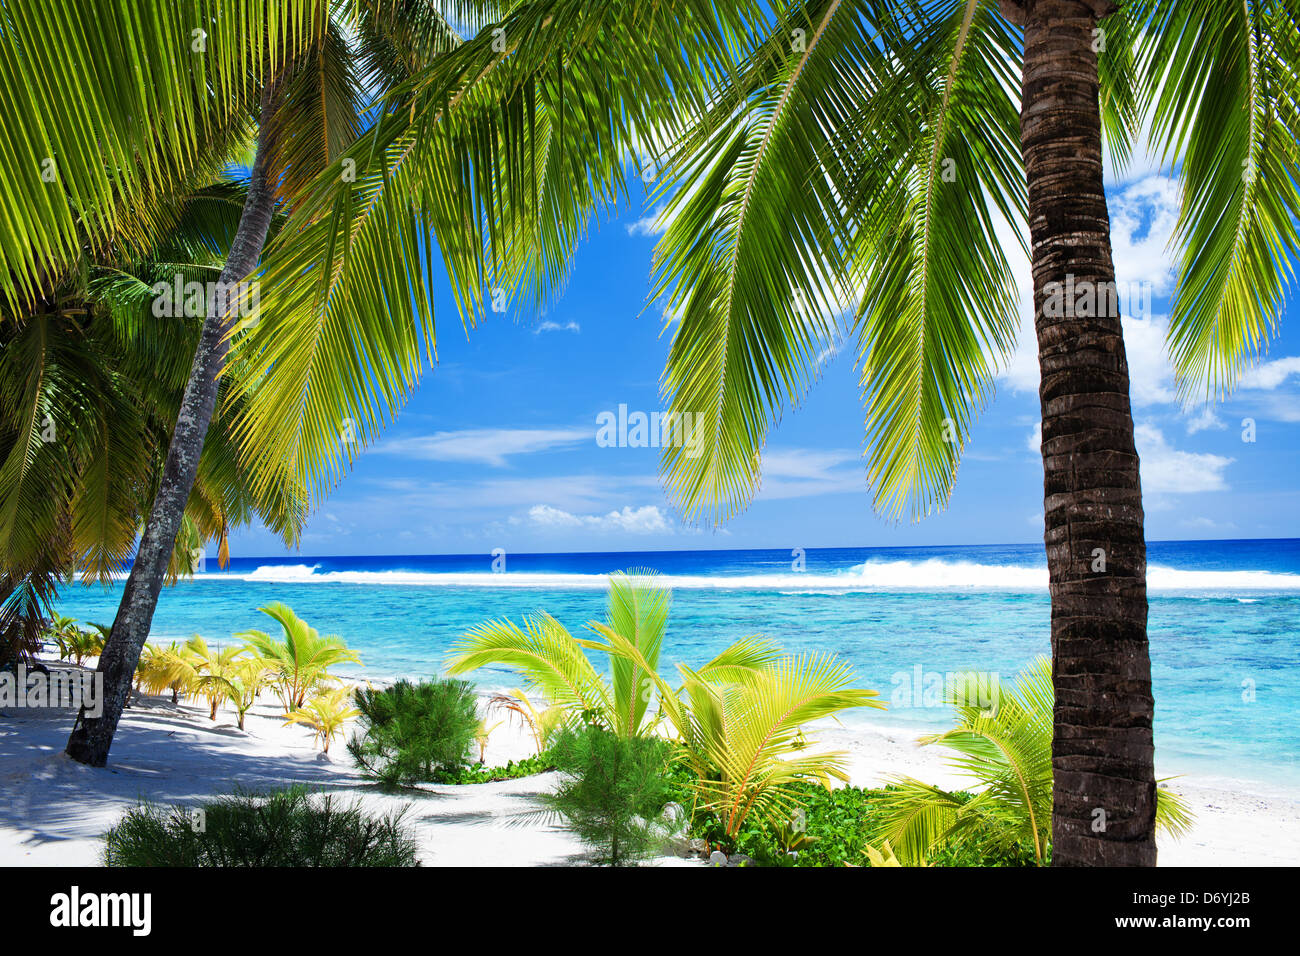 Le palme che si affaccia incredibile laguna blu e bianca spiaggia Foto Stock